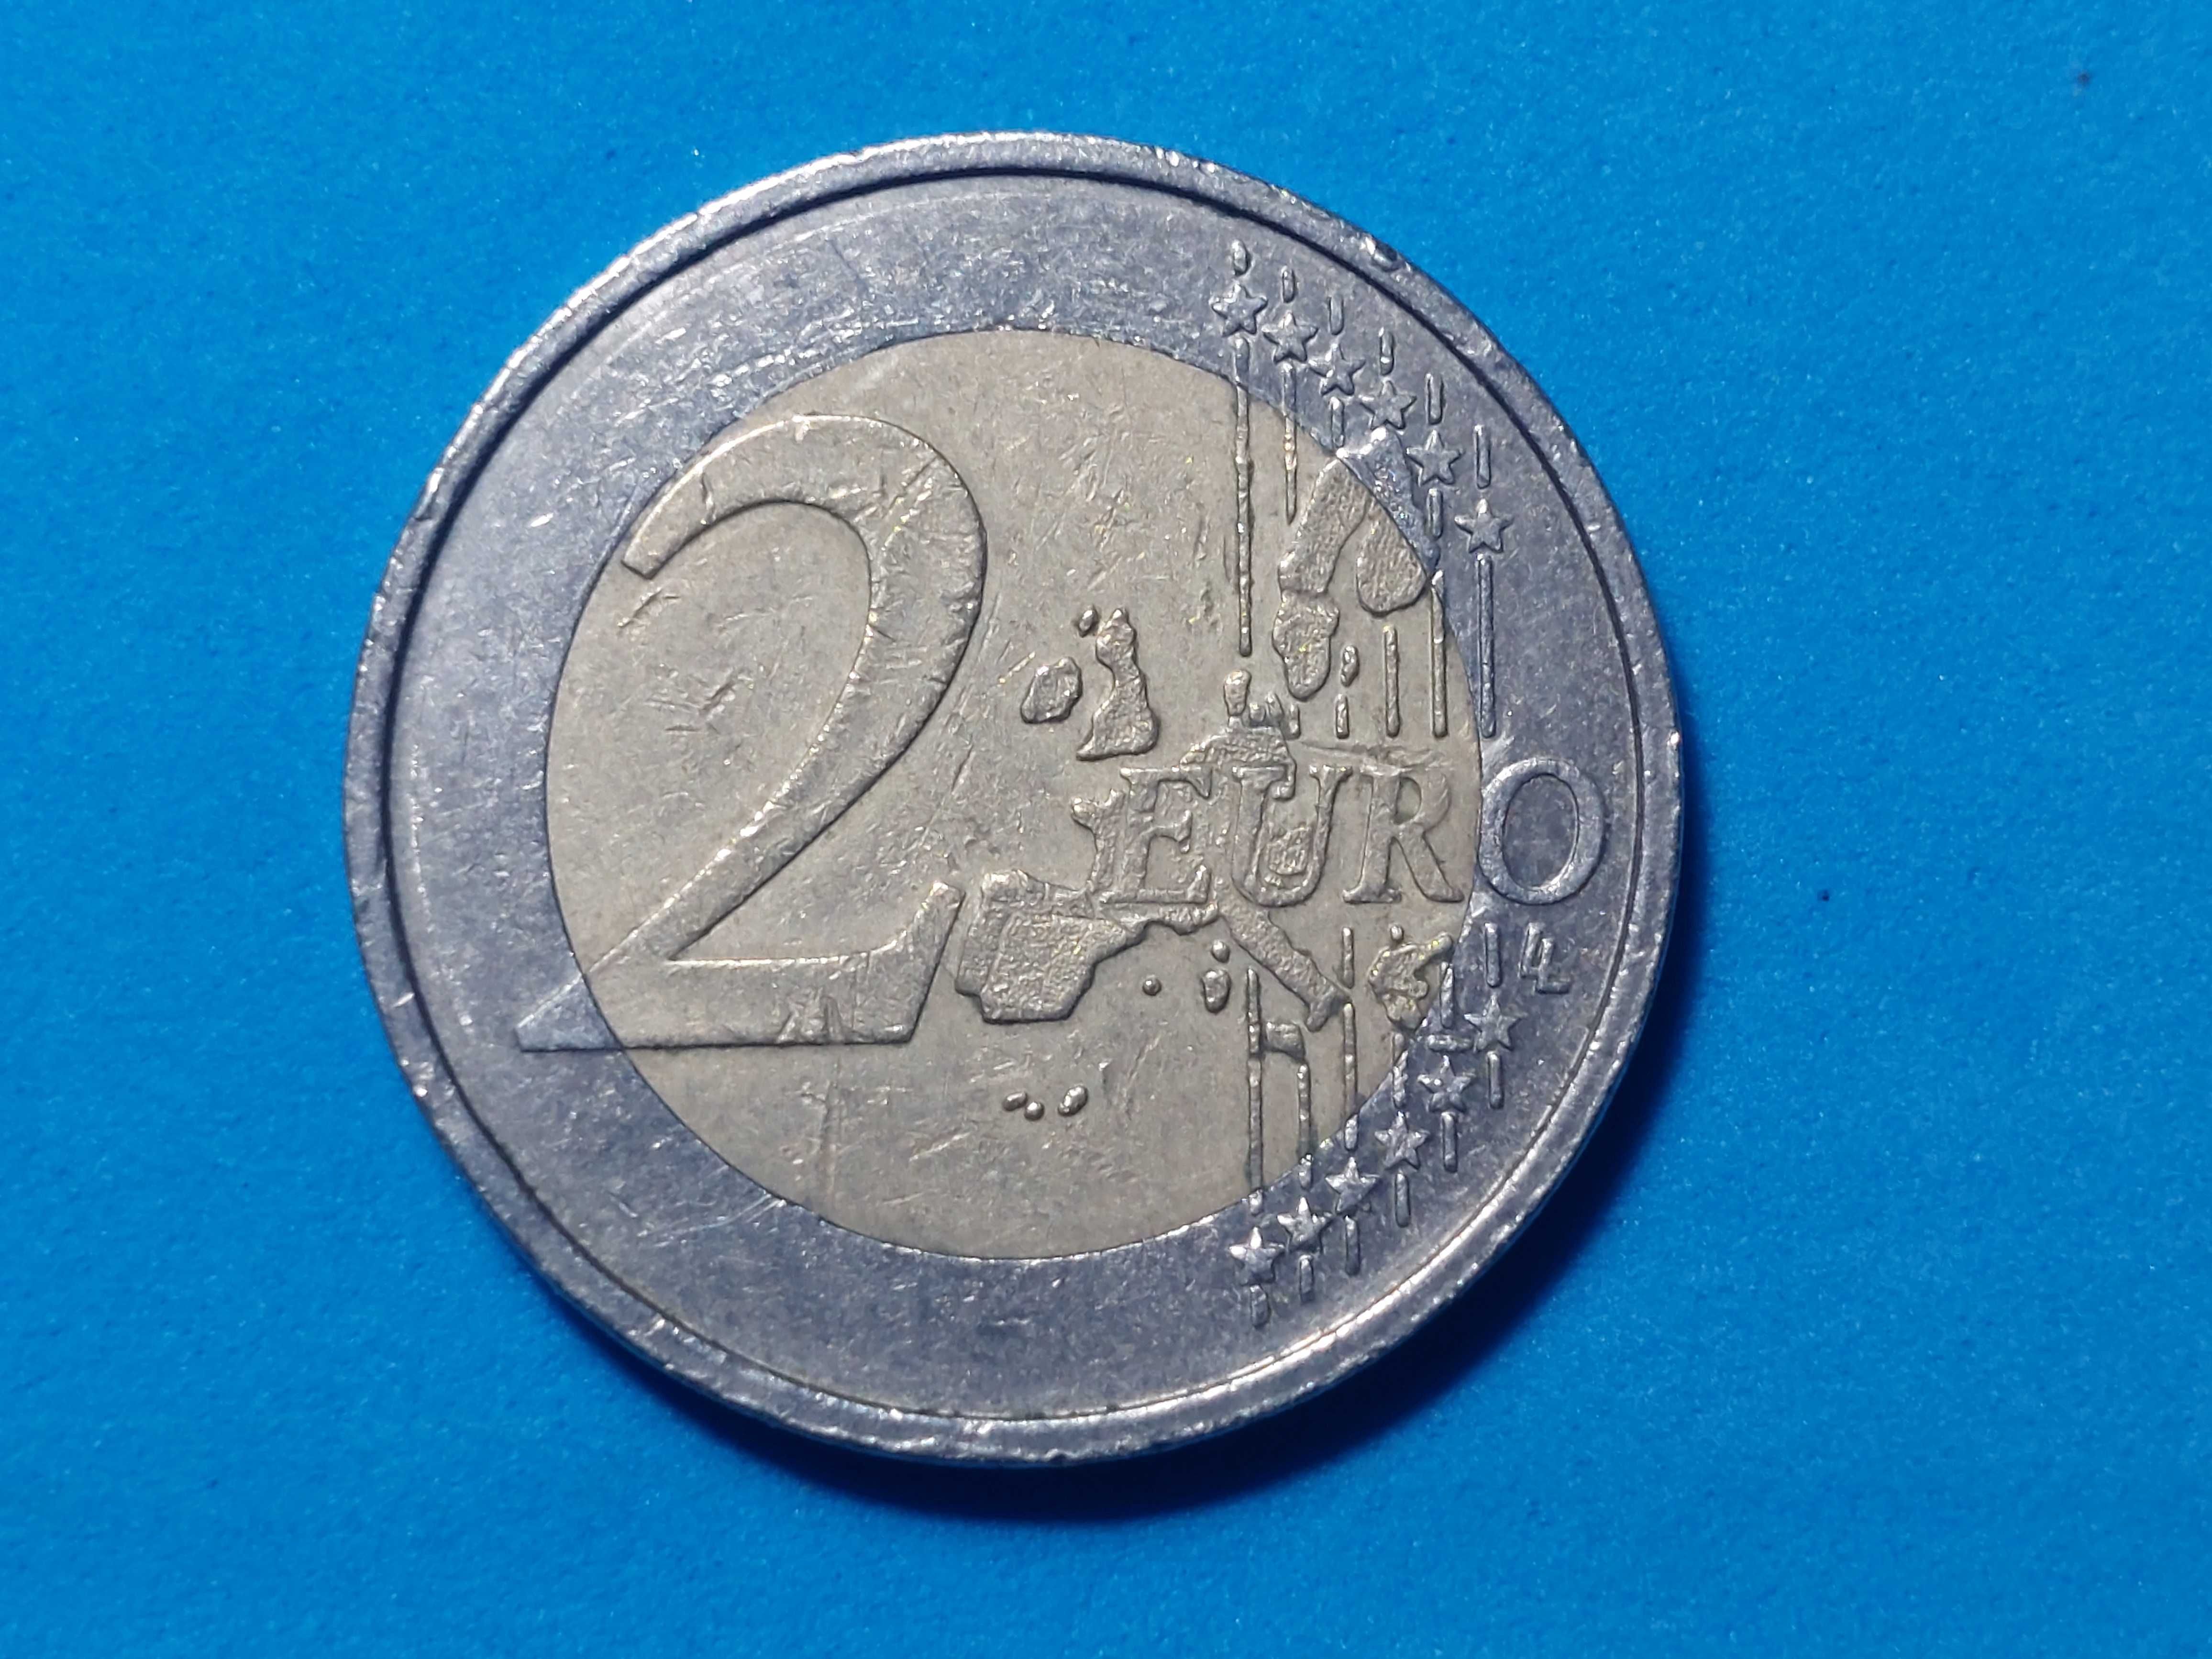 Moeda Bélgica 2 euros ano 2004 com erro de cunhagem no mapa